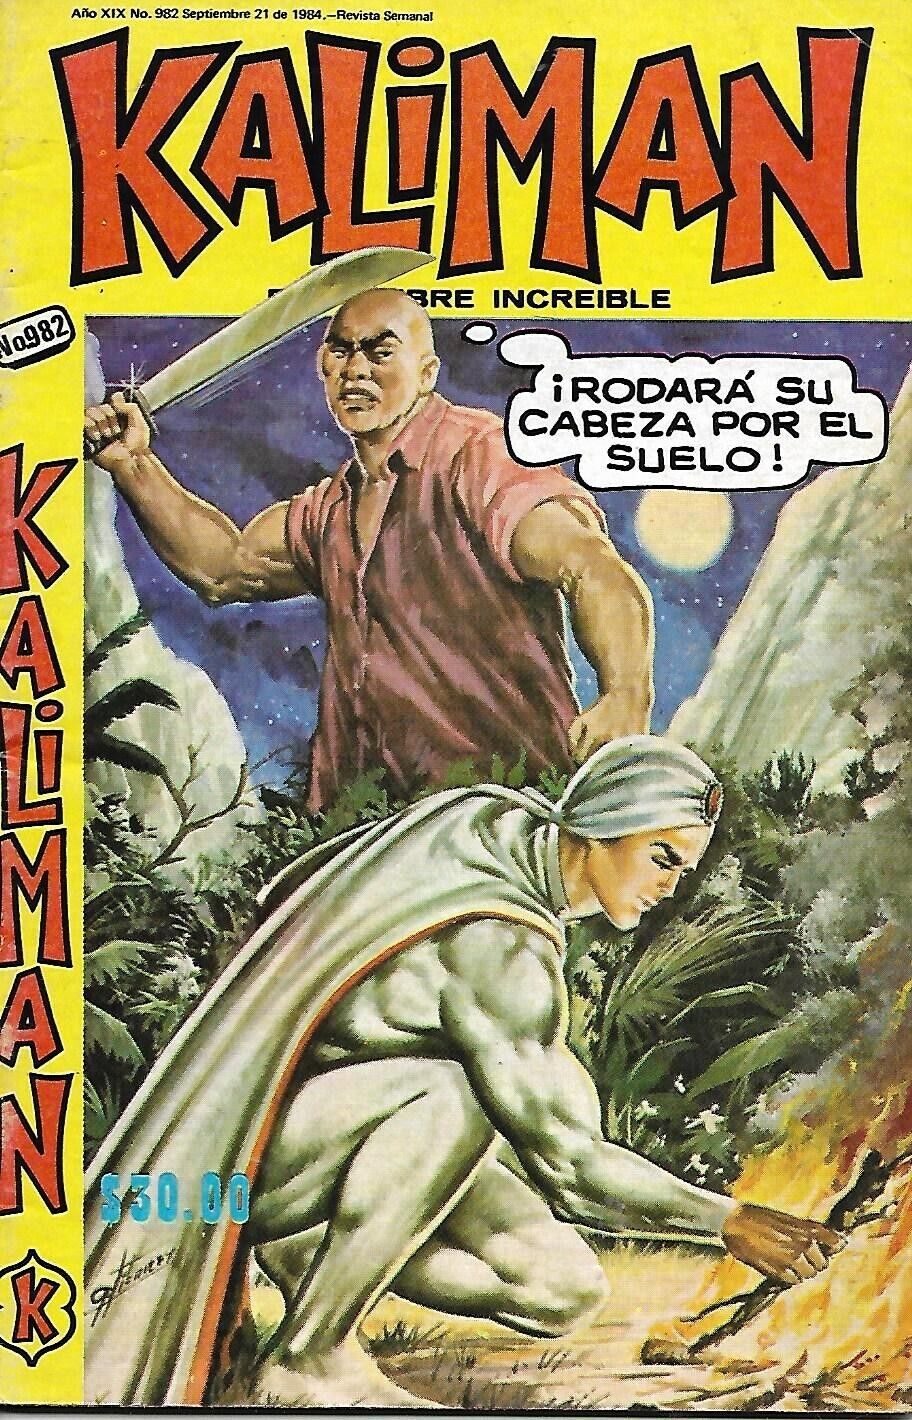 Kaliman El Hombre Increible #982 - Septiembre 21, 1984 - Mexico